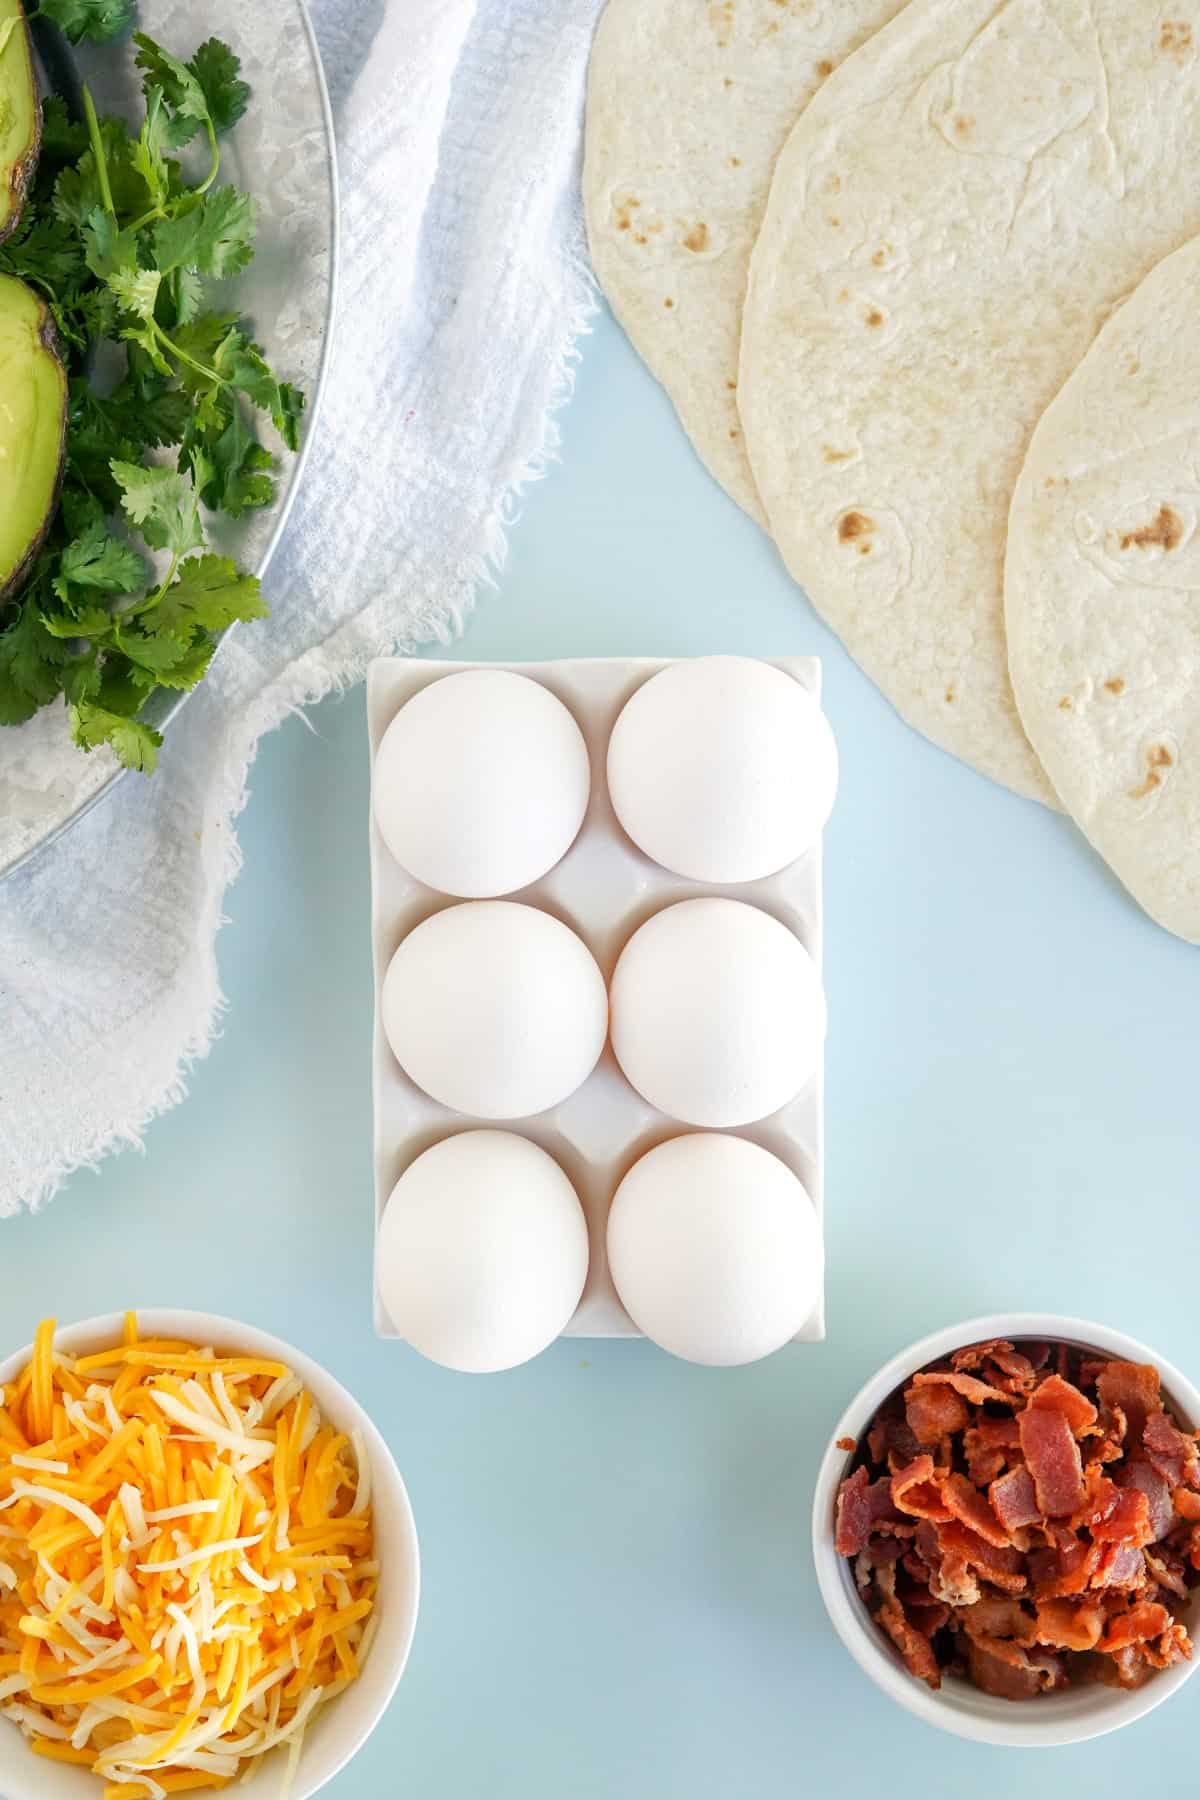 Ingredients for Easy Breakfast Quesadillas. 